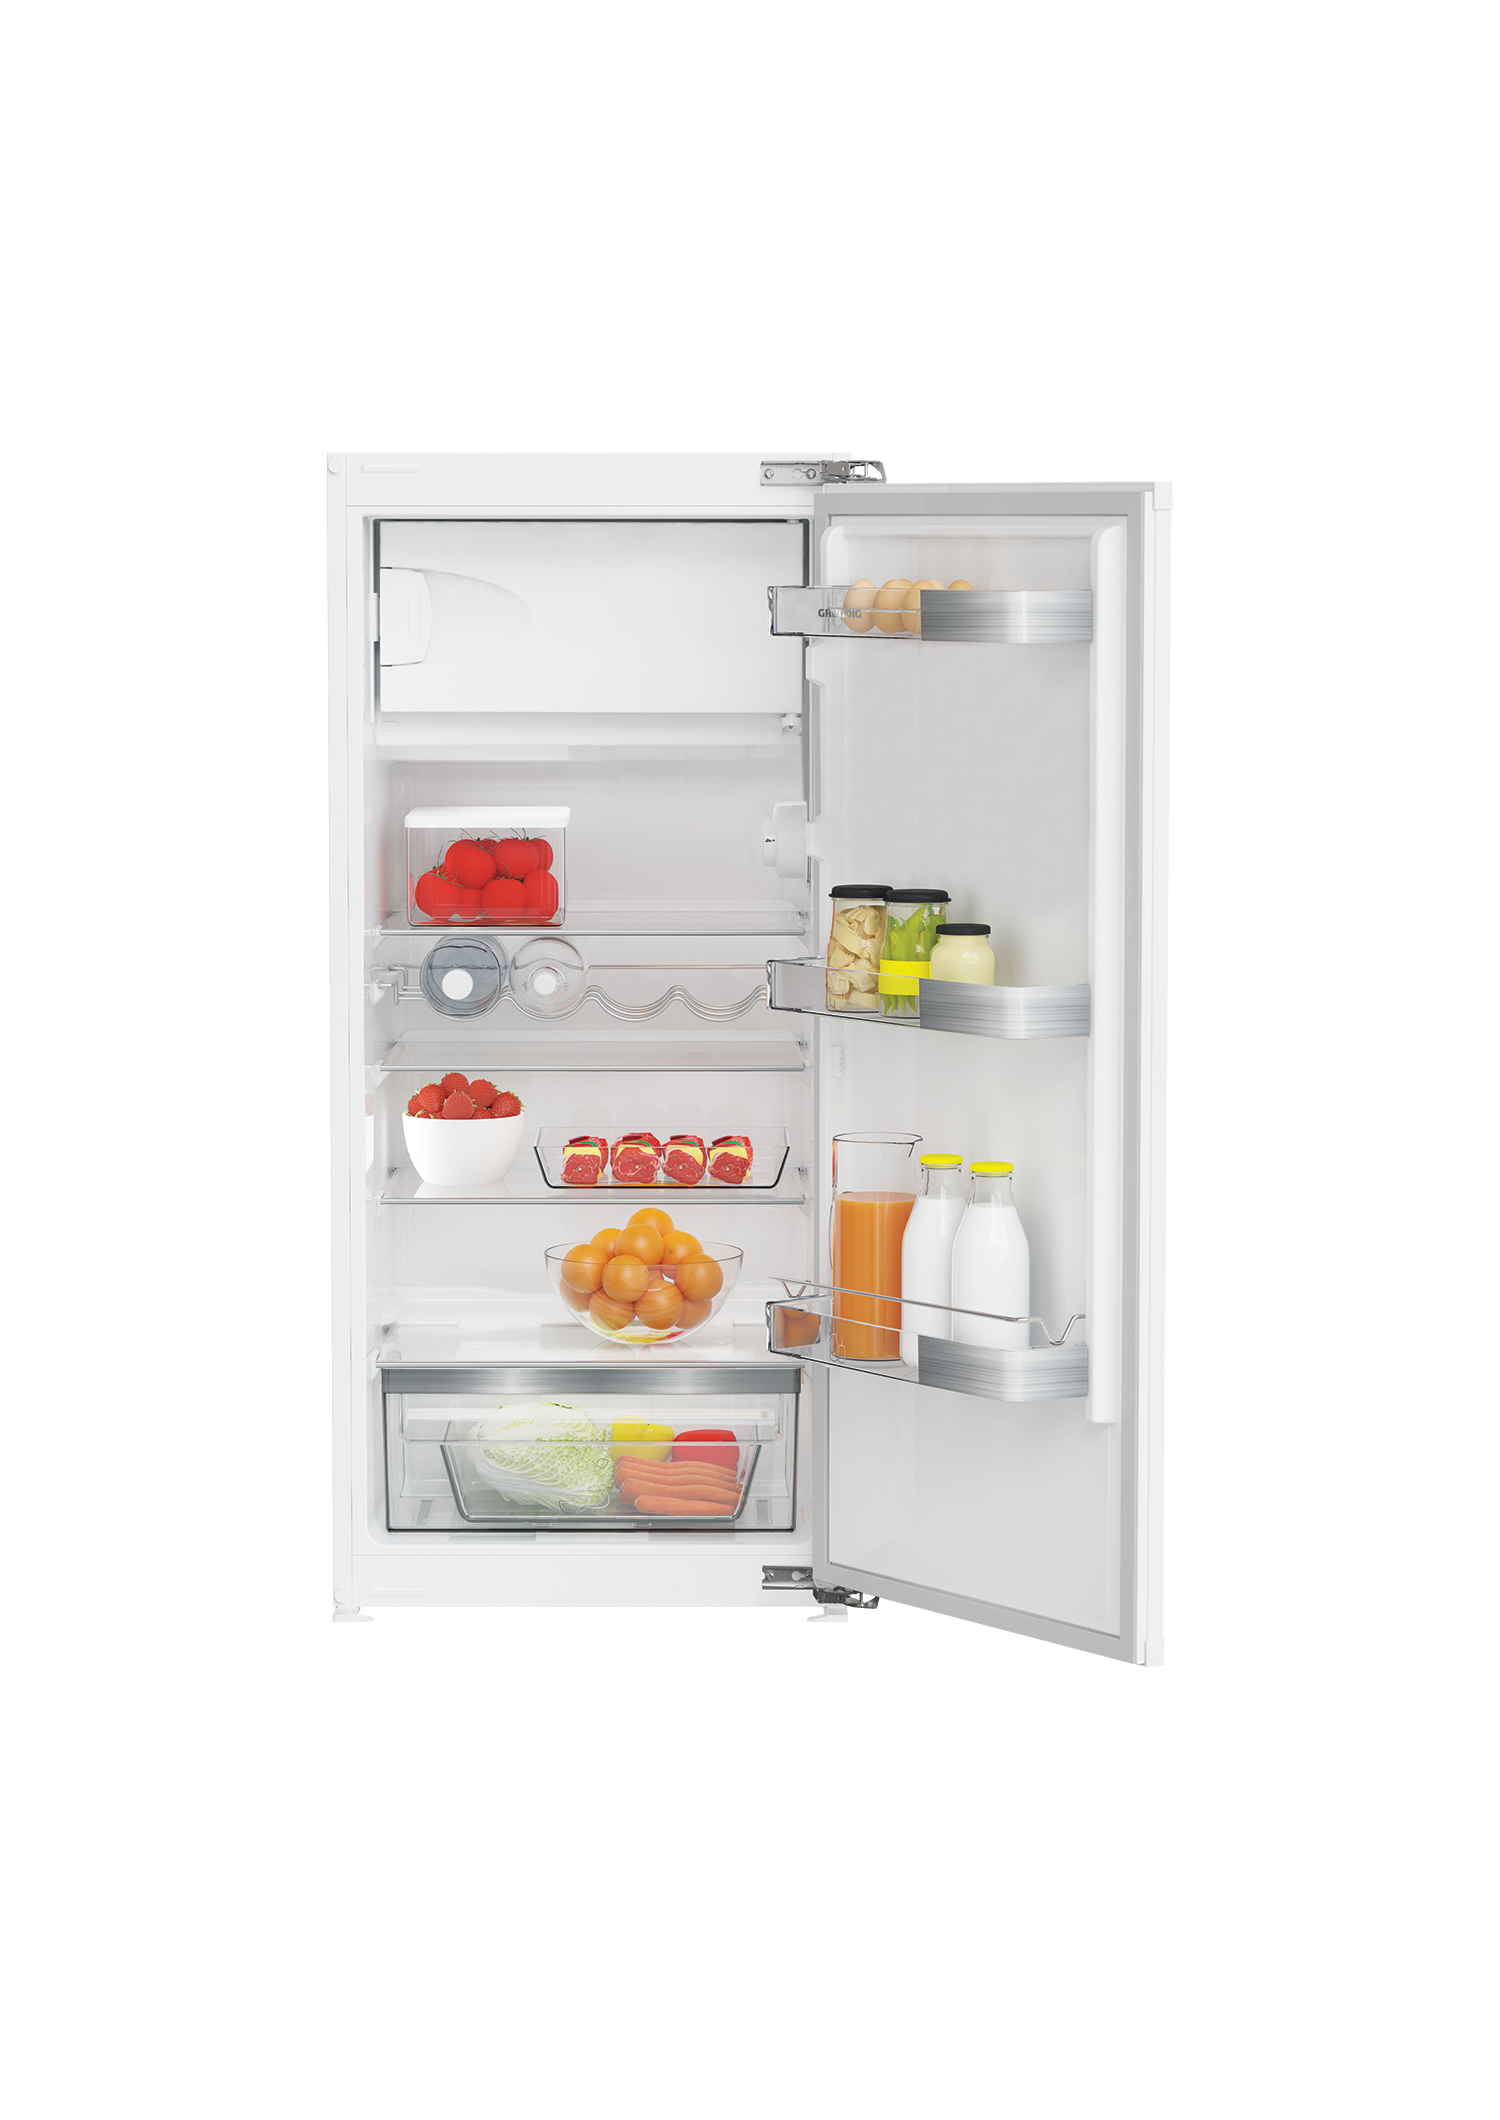 GSMI14331FN - Kühlschrank - jetzt kaufen | Kühlen & Gefrieren | Grundig